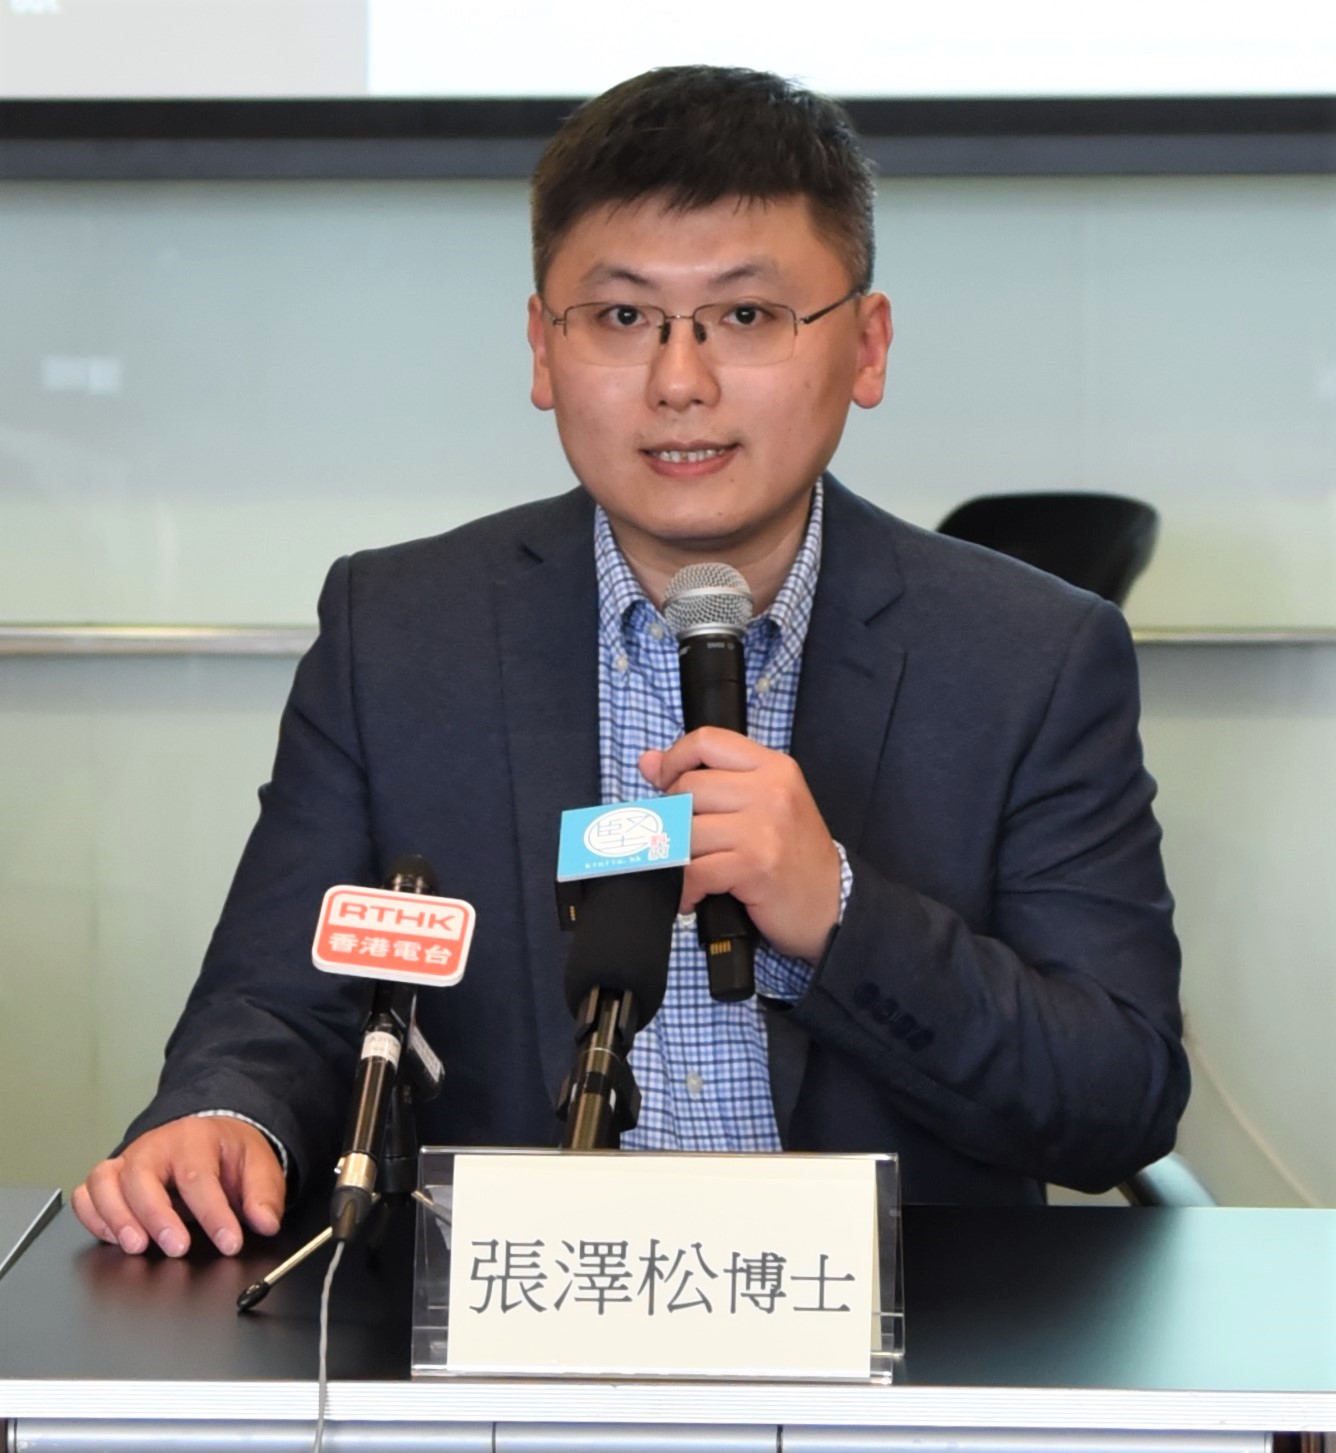 香港科技創新教育聯盟主席、香港城市大學電機工程學系副教授張澤松博士